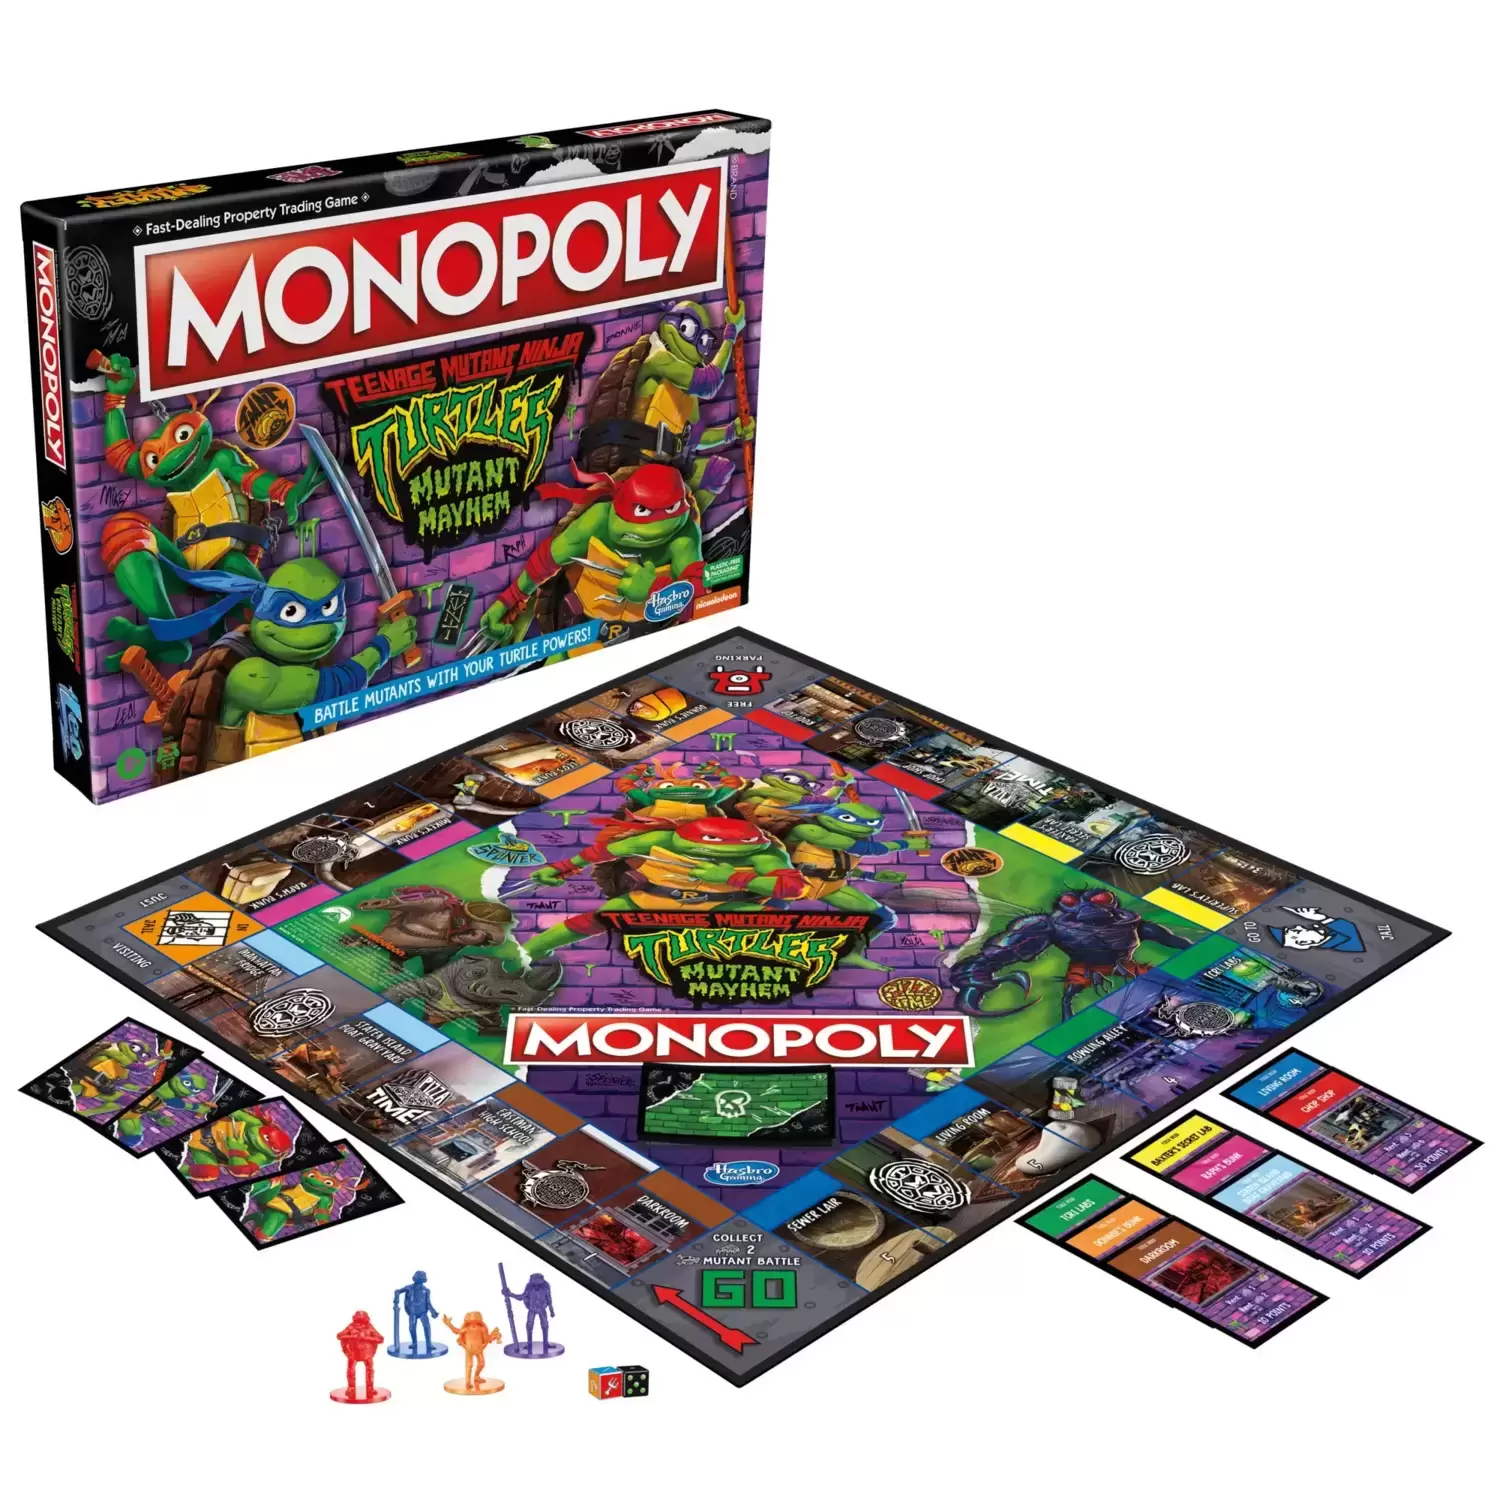 Monopoly Films & Séries TV - Monopoly Teenage Mutant Ninja Turtles: Mutant Mayhem Edition